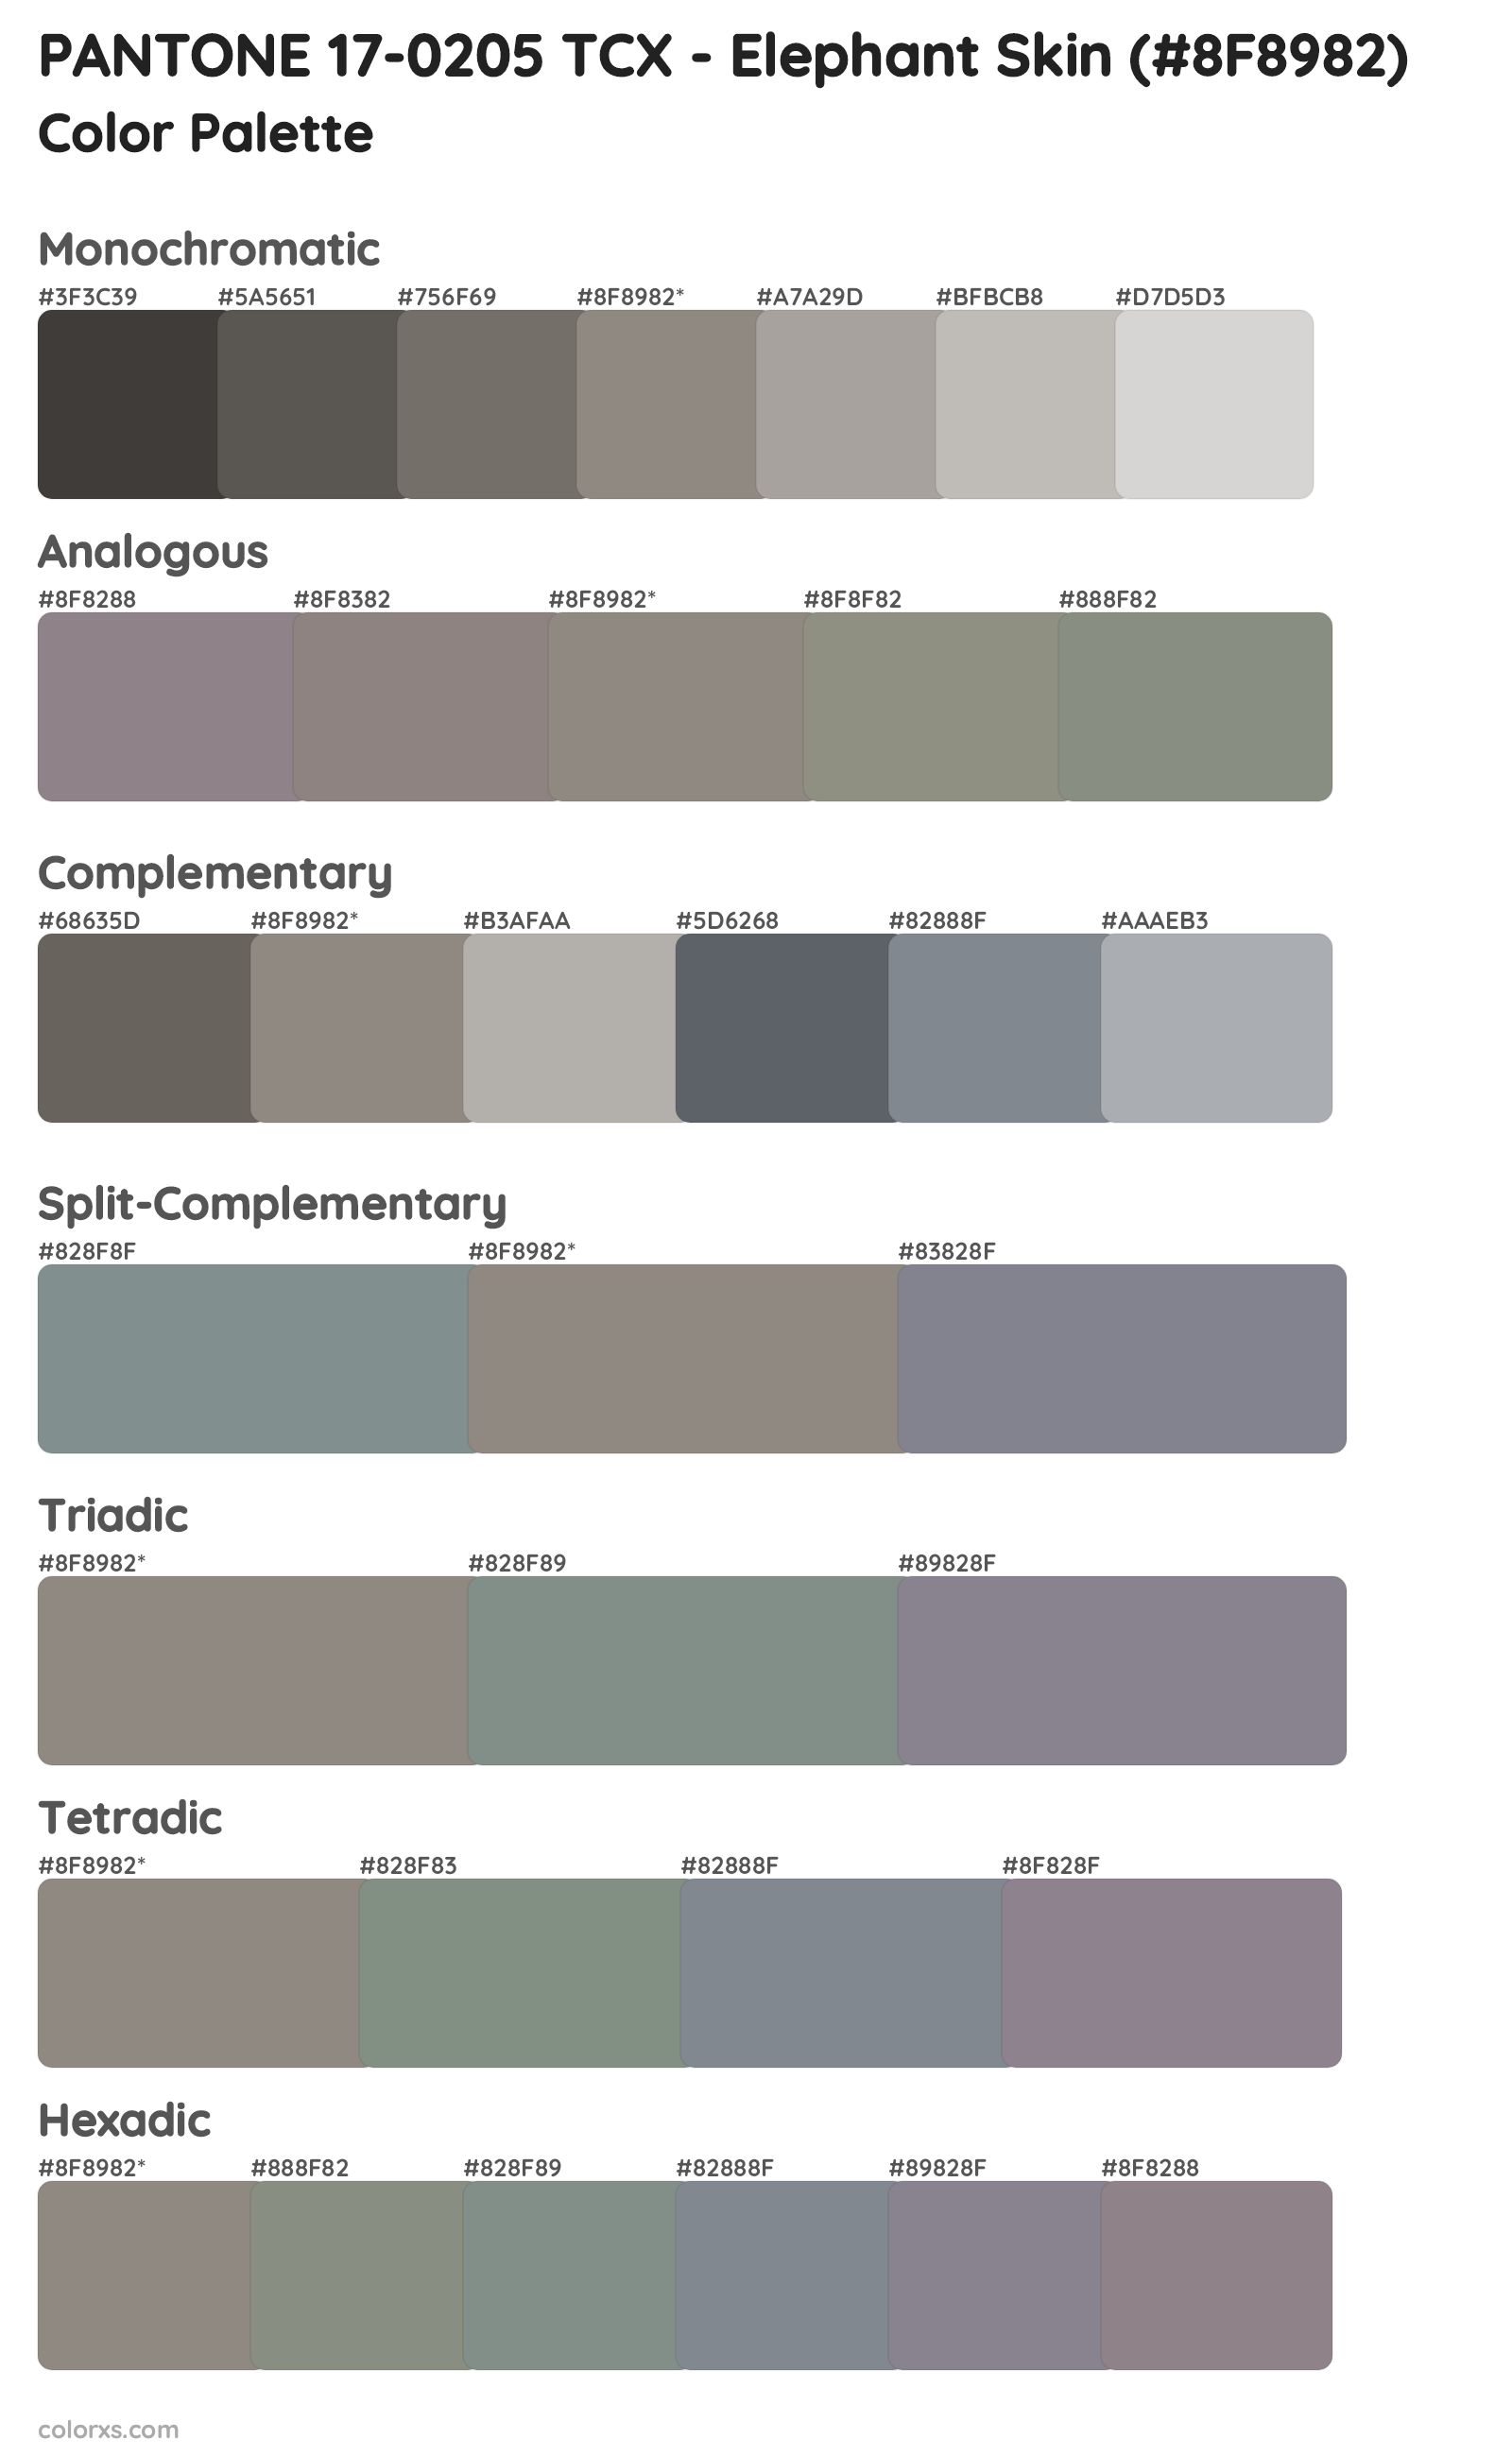 PANTONE 17-0205 TCX - Elephant Skin Color Scheme Palettes